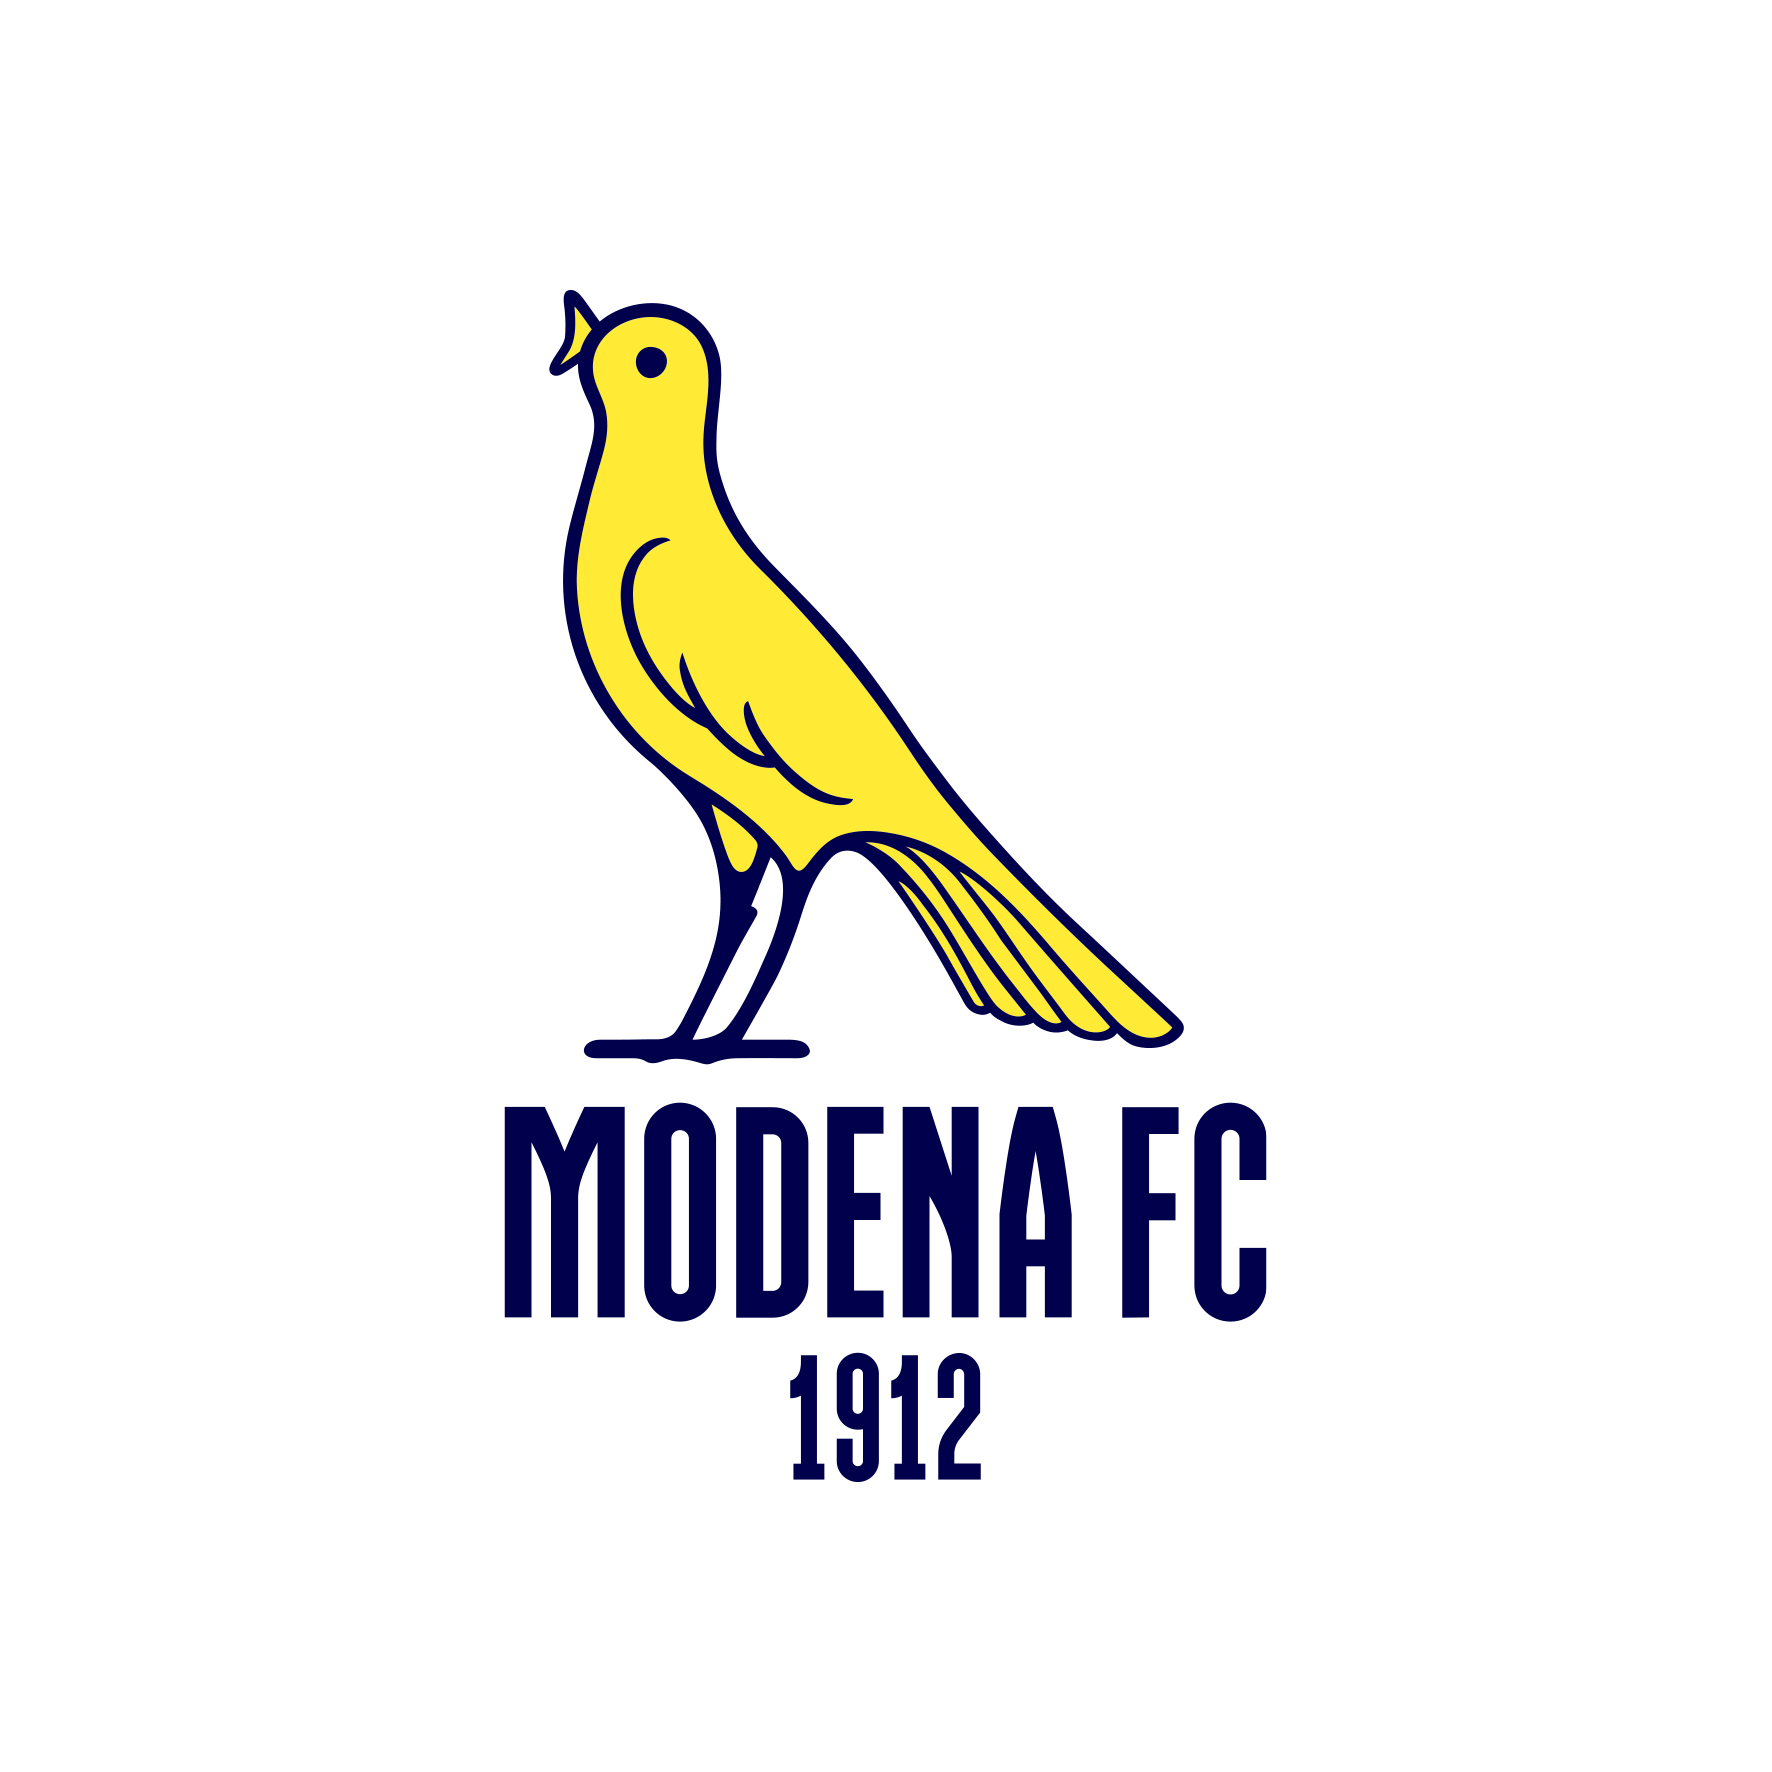 MODENA FC 2018: NUOVO NOME E LOGO 2018